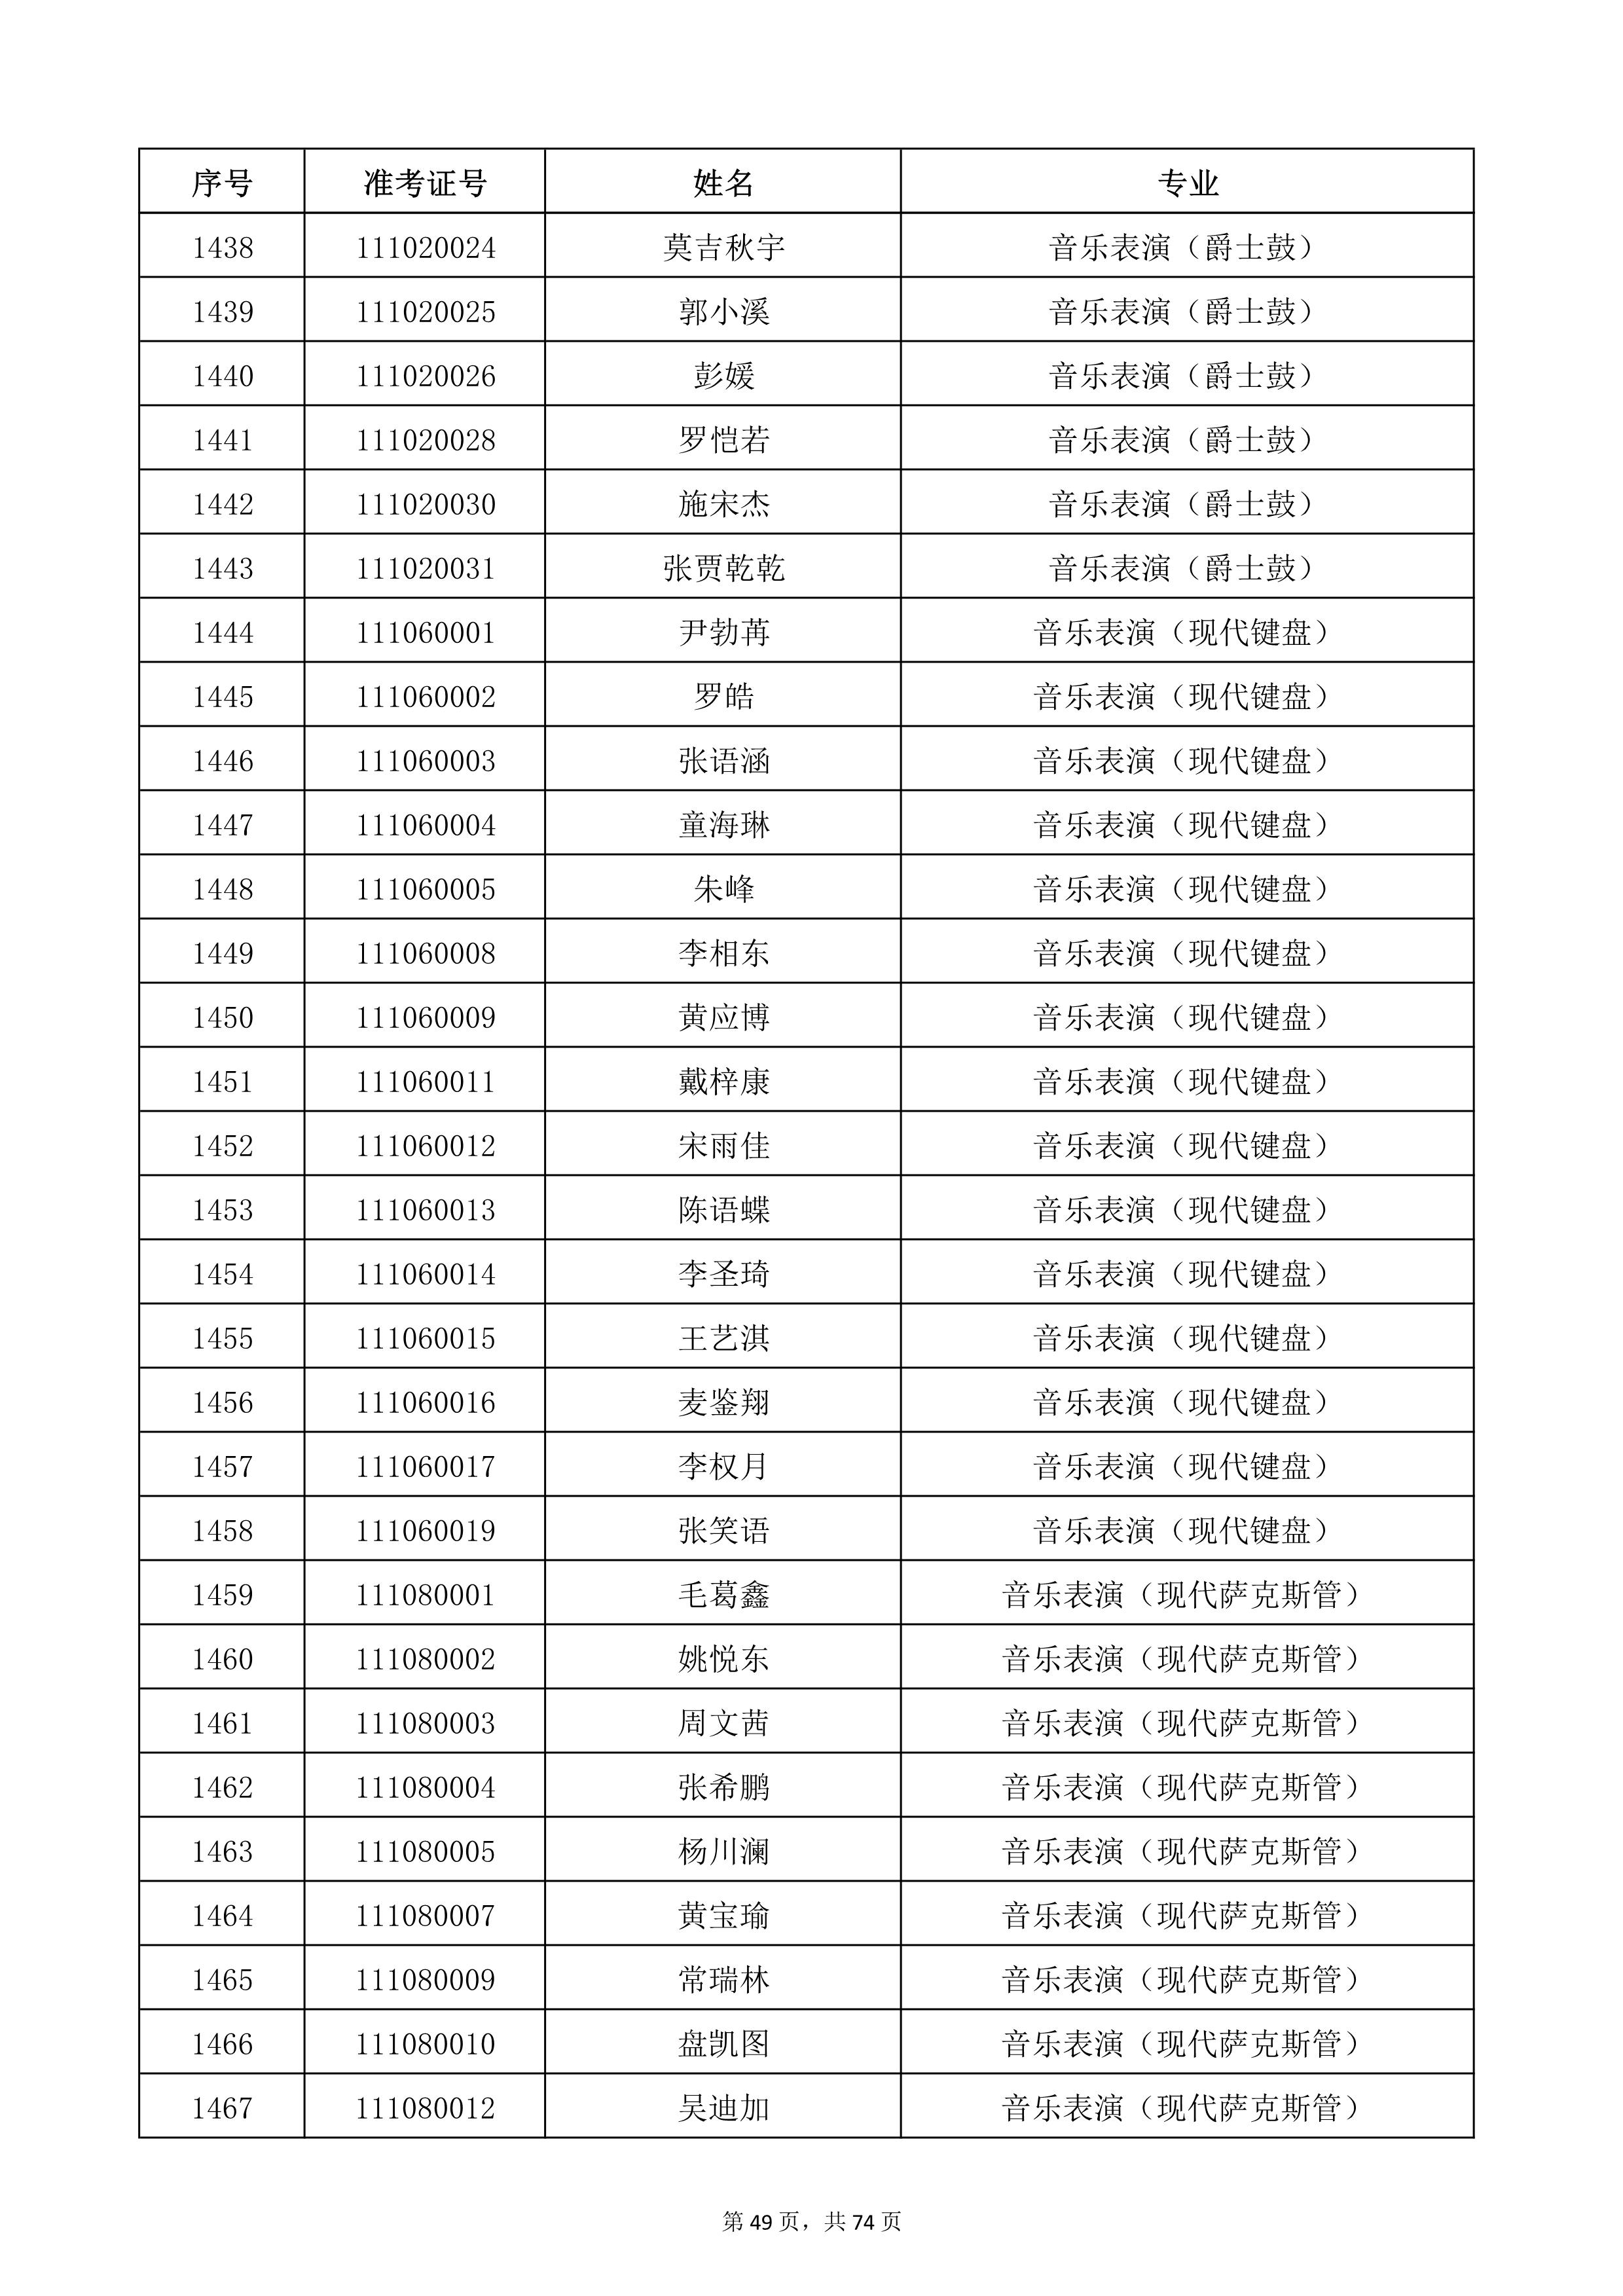 天津音乐学院2022年本科招生考试复试名单_49.jpg